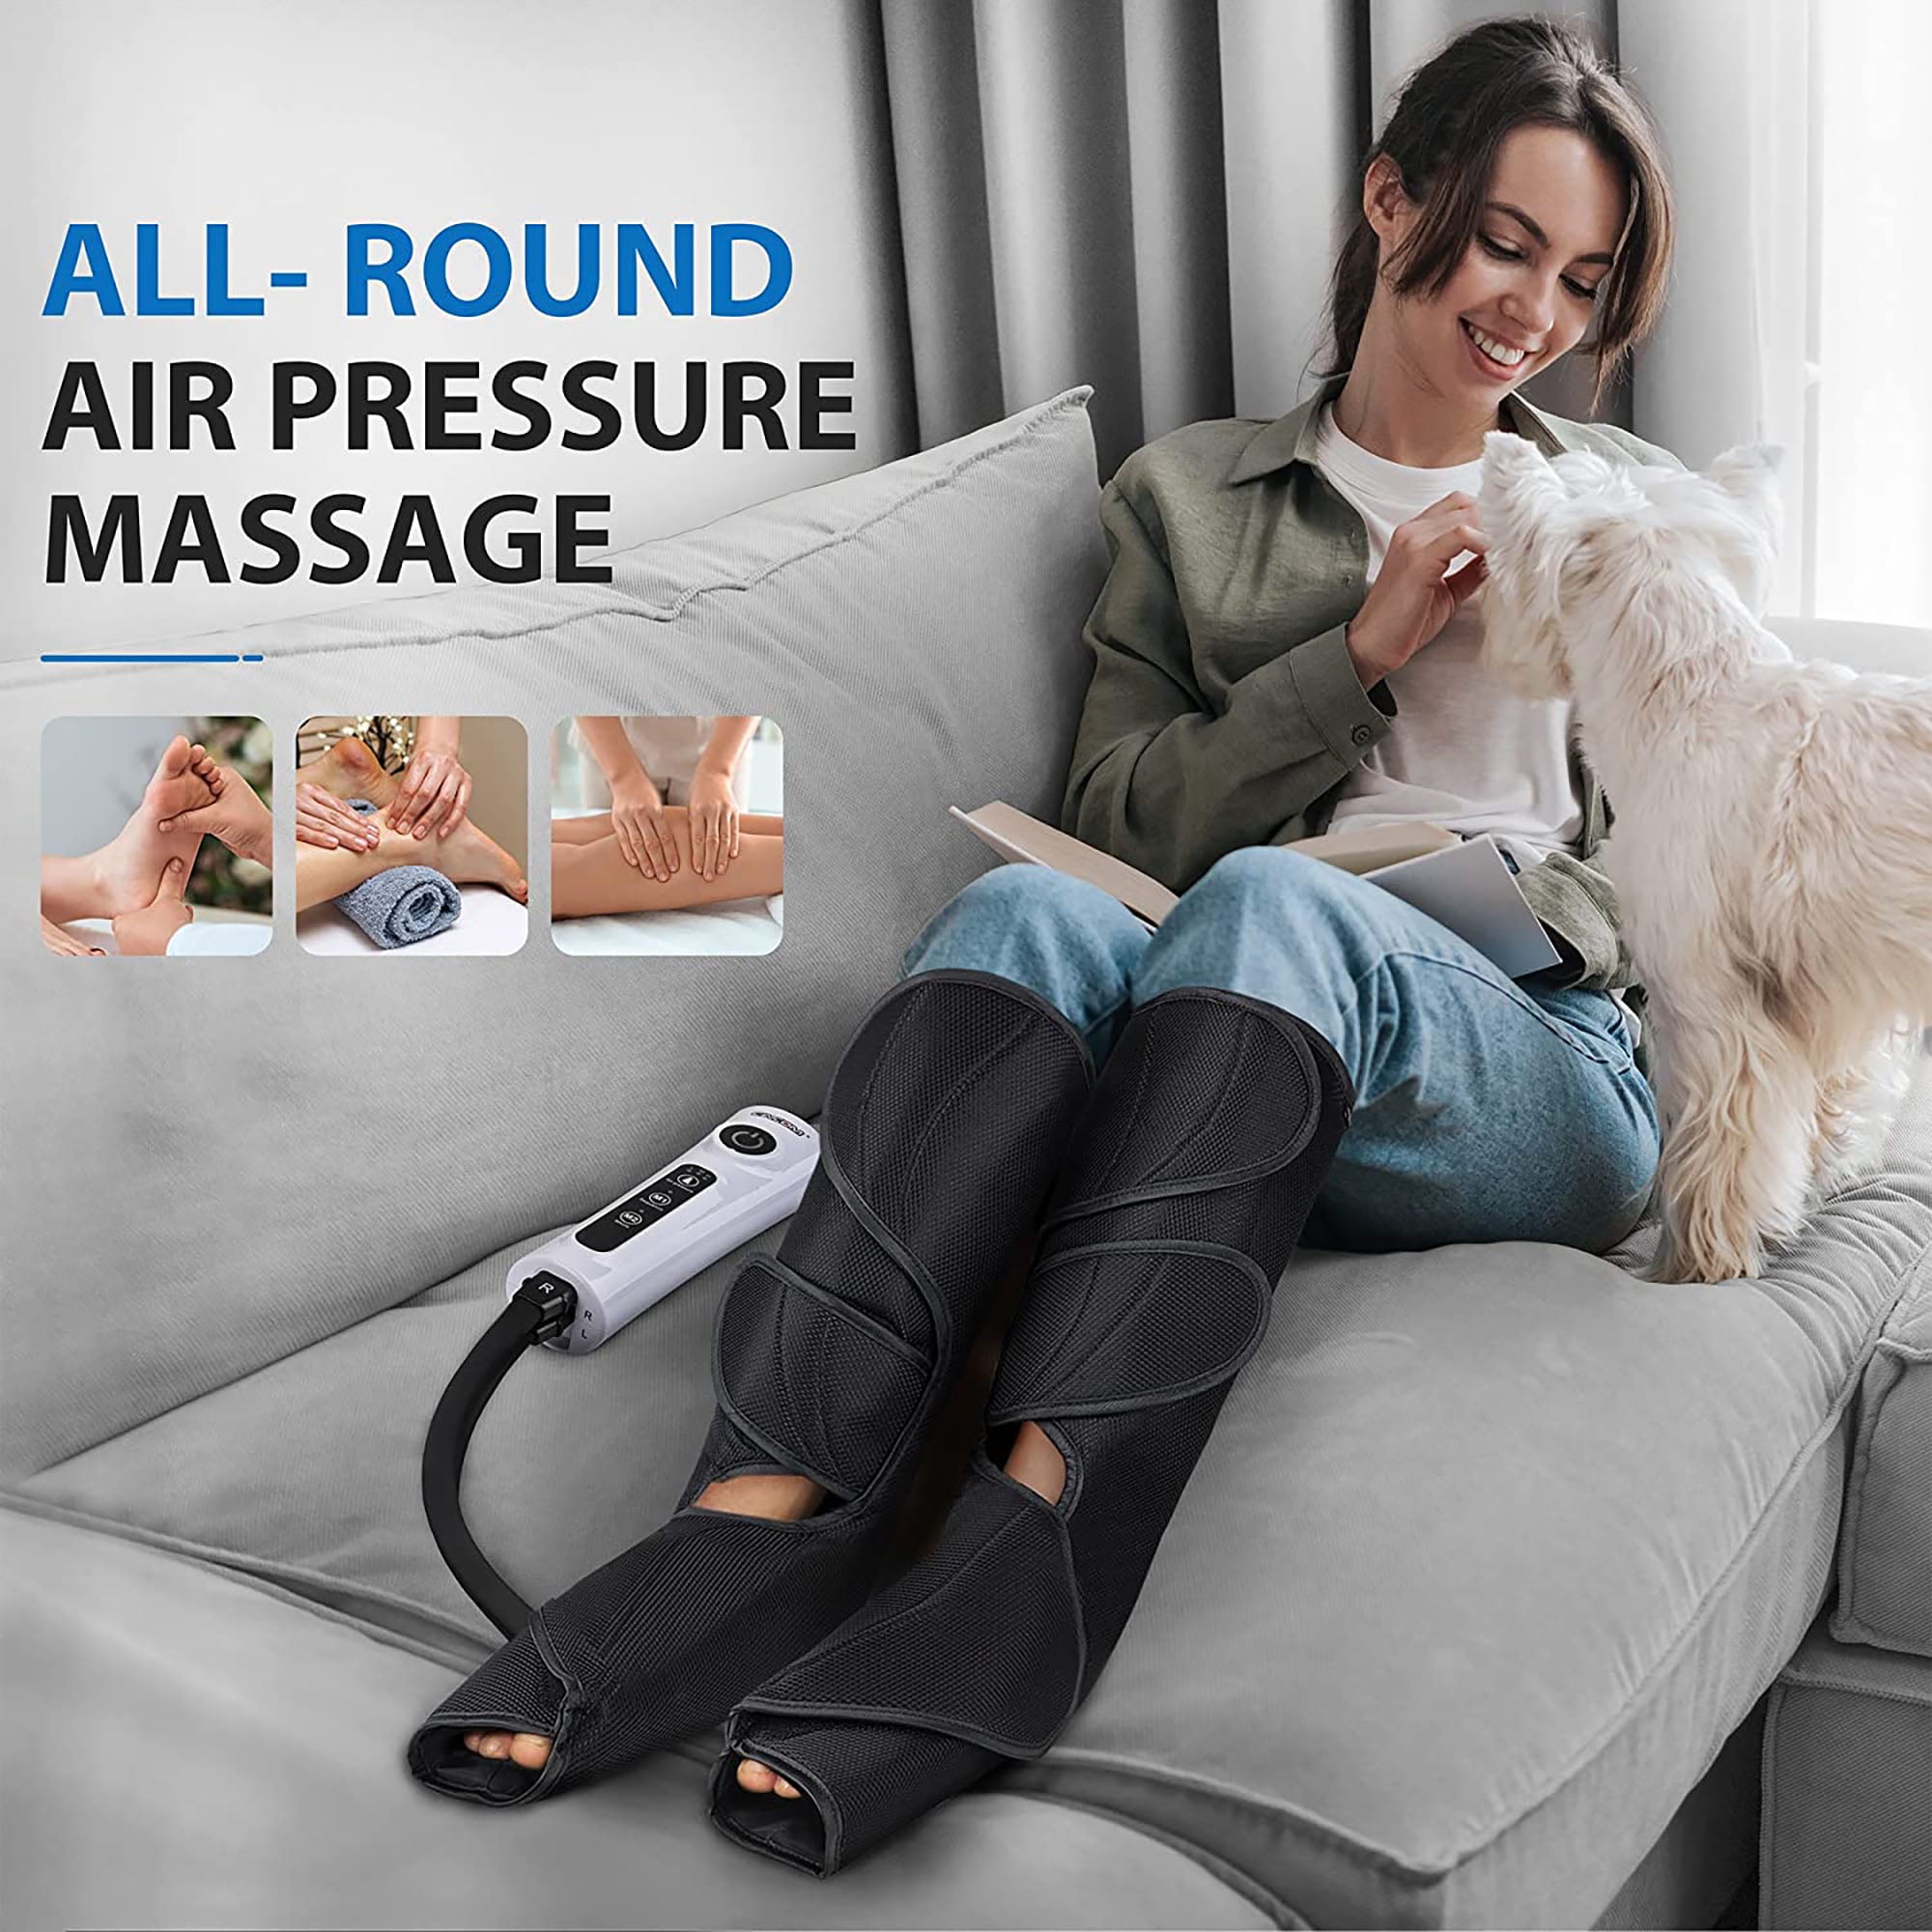 CINCOM Rechargeable Leg Massager for Circulation, Wireless Air Leg Compression Massager, Calf Massager for Leg Pain Relief,Circulation, and Muscles